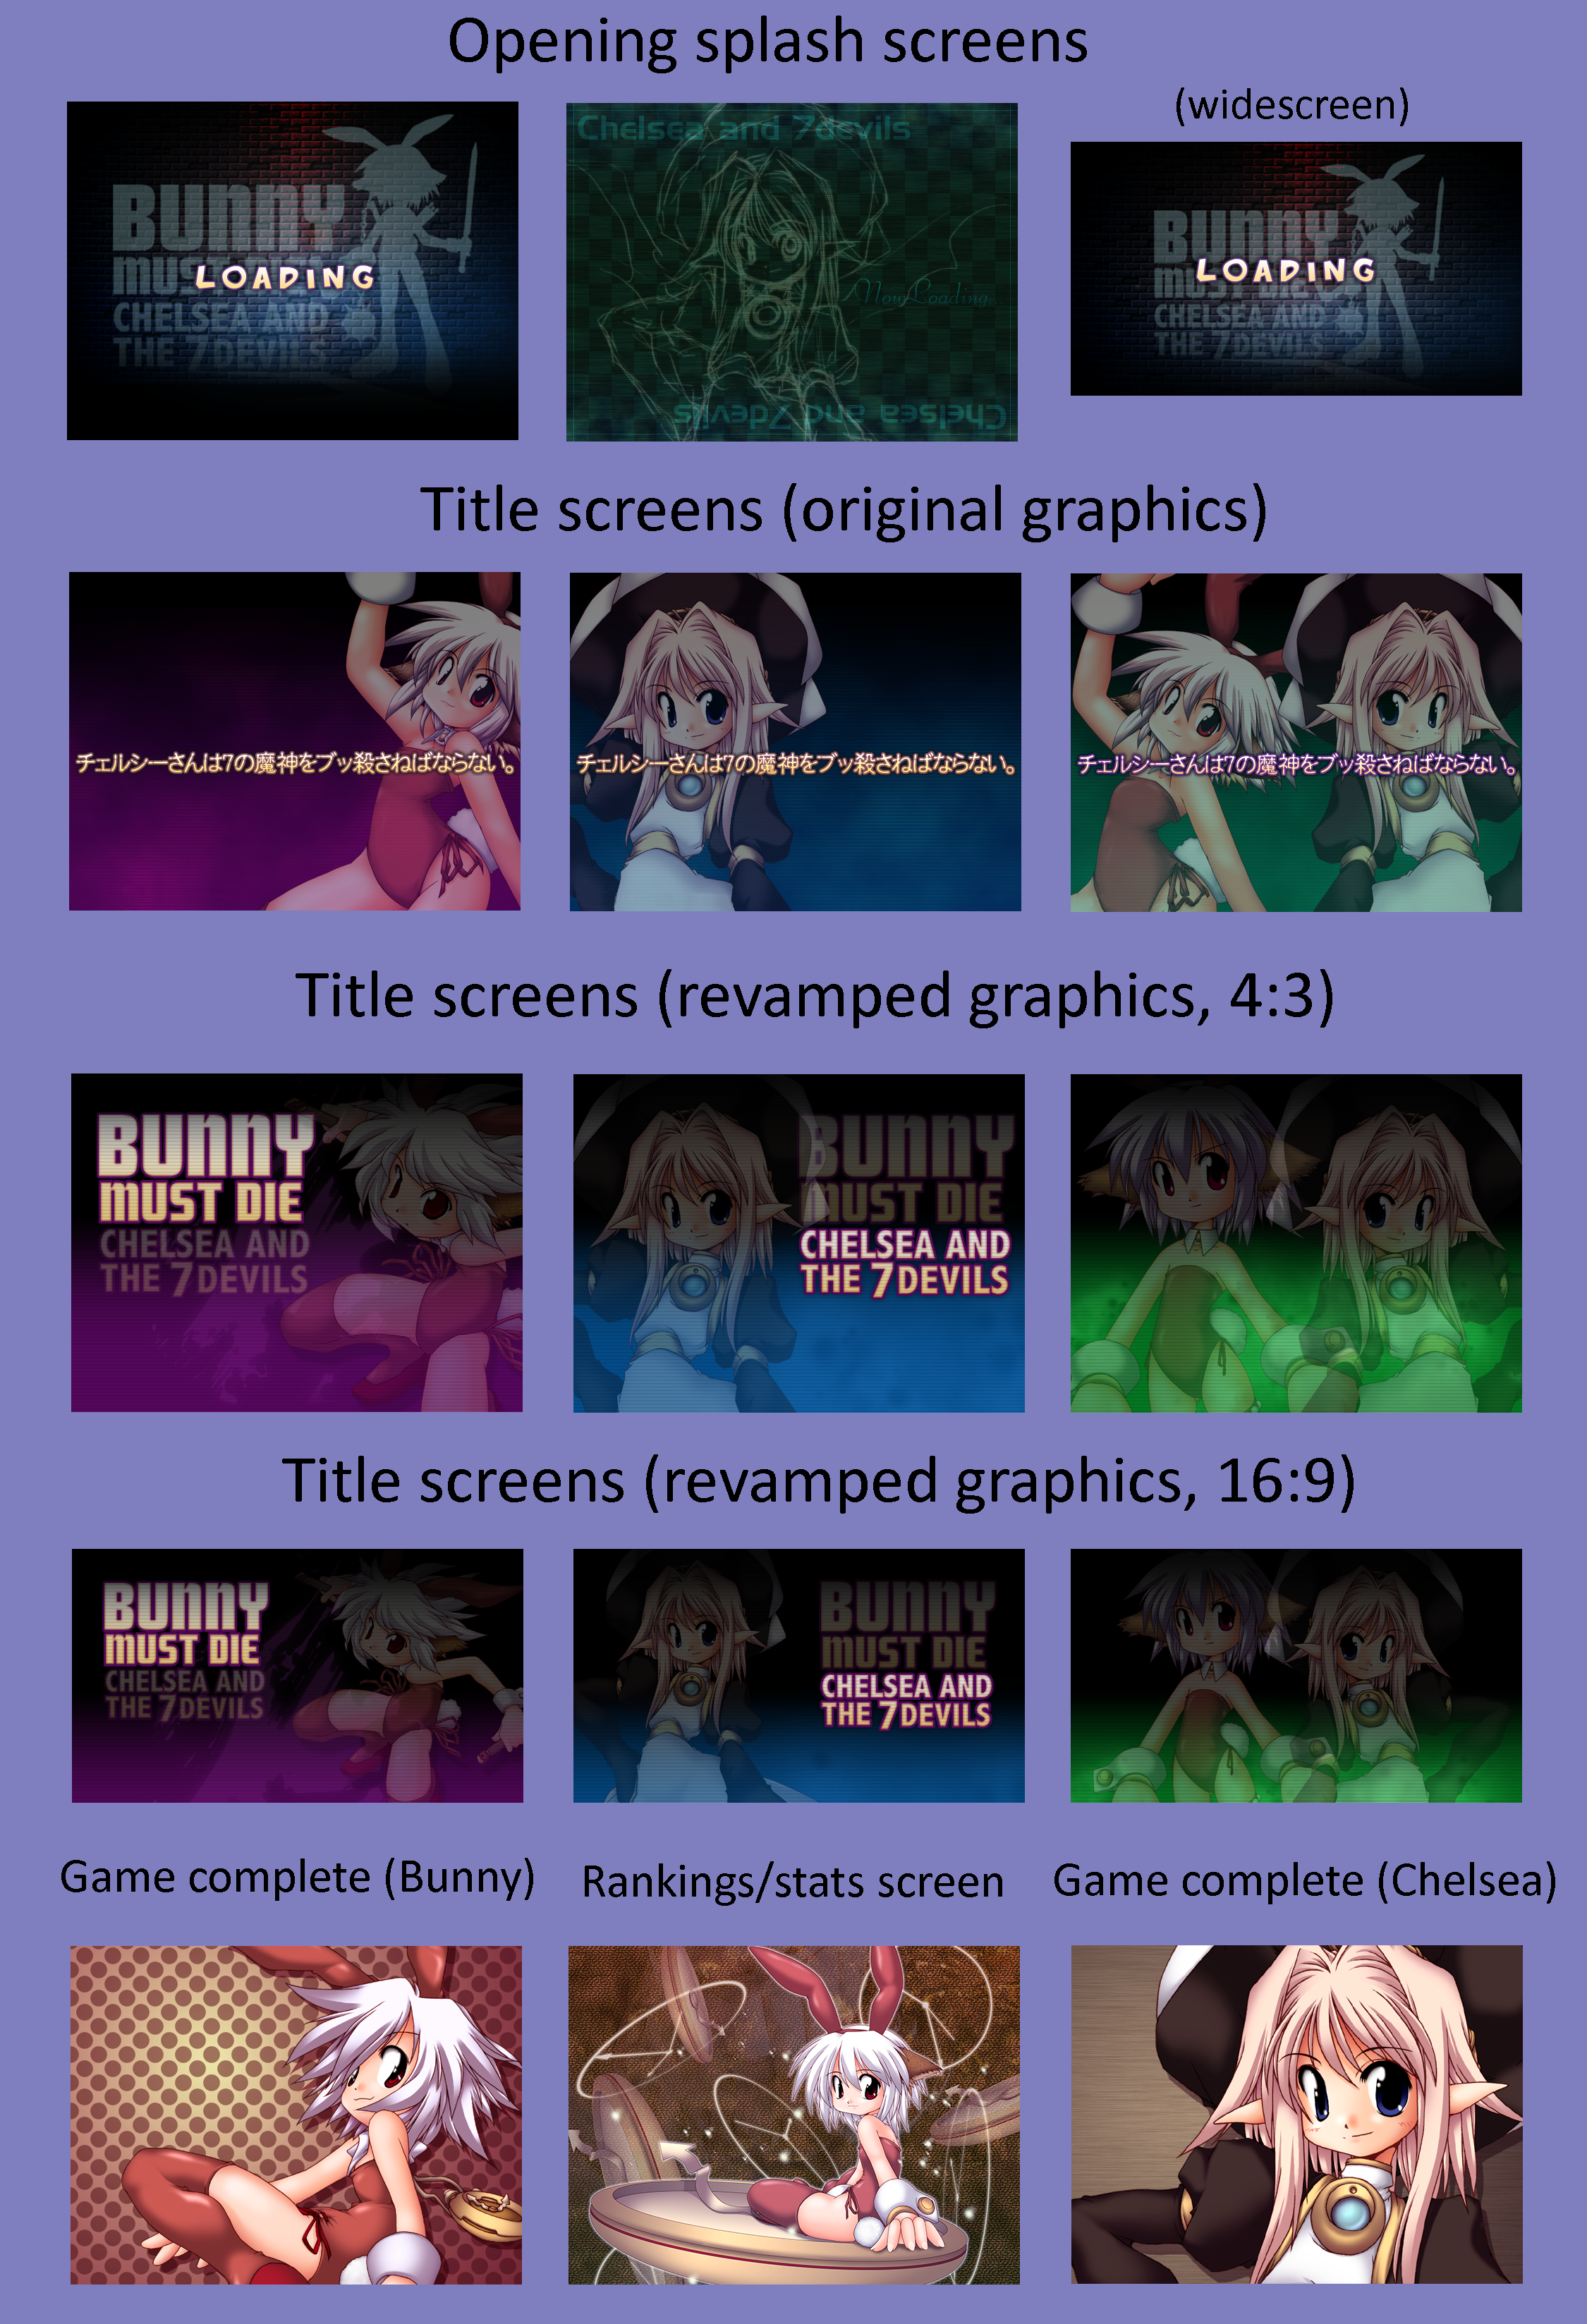 Bunny Must Die! Chelsea and the 7 Devils - Menu Screens Artwork (PC/Steam)